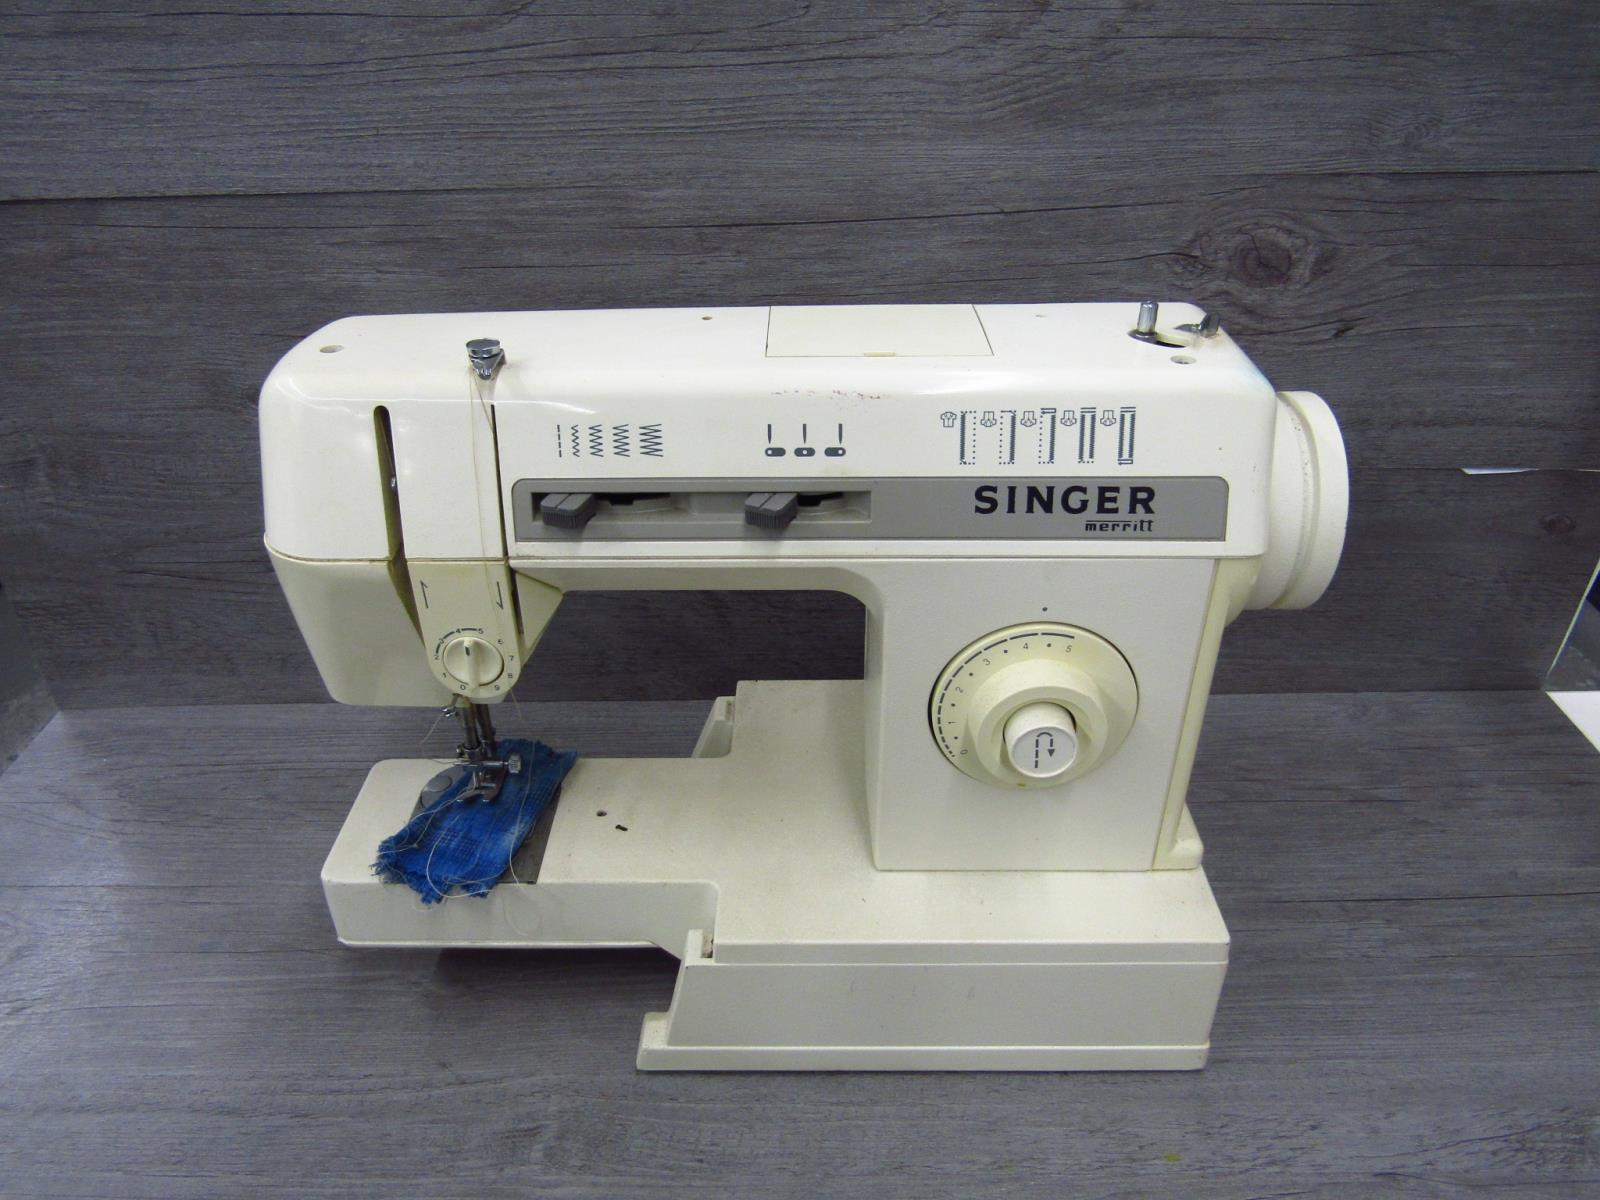 Singer Merritt 2502c White Sewing Machine Heavy Duty